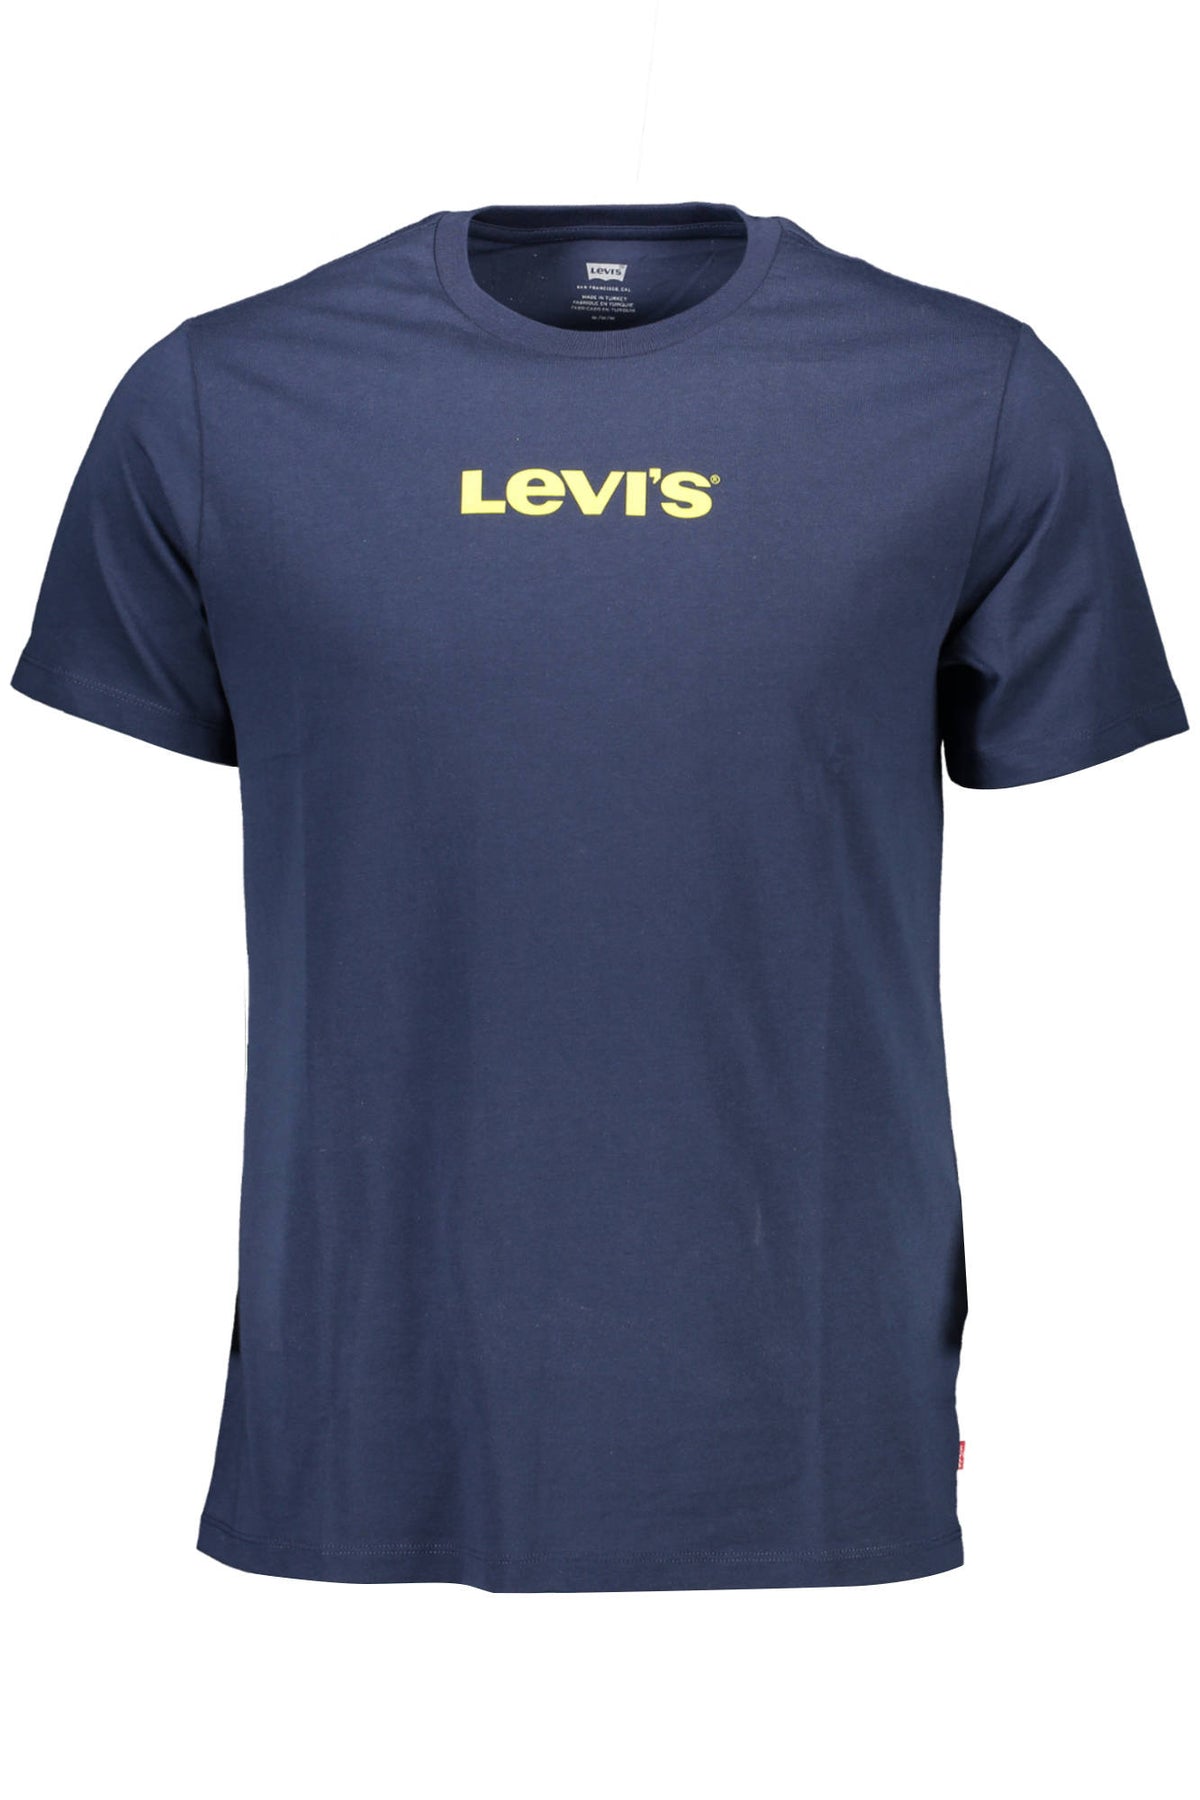 LEVI'S Herren T-Shirt Shirt Sweatshirt Oberteil mit Rundhalsausshnitt, kurzärmlig